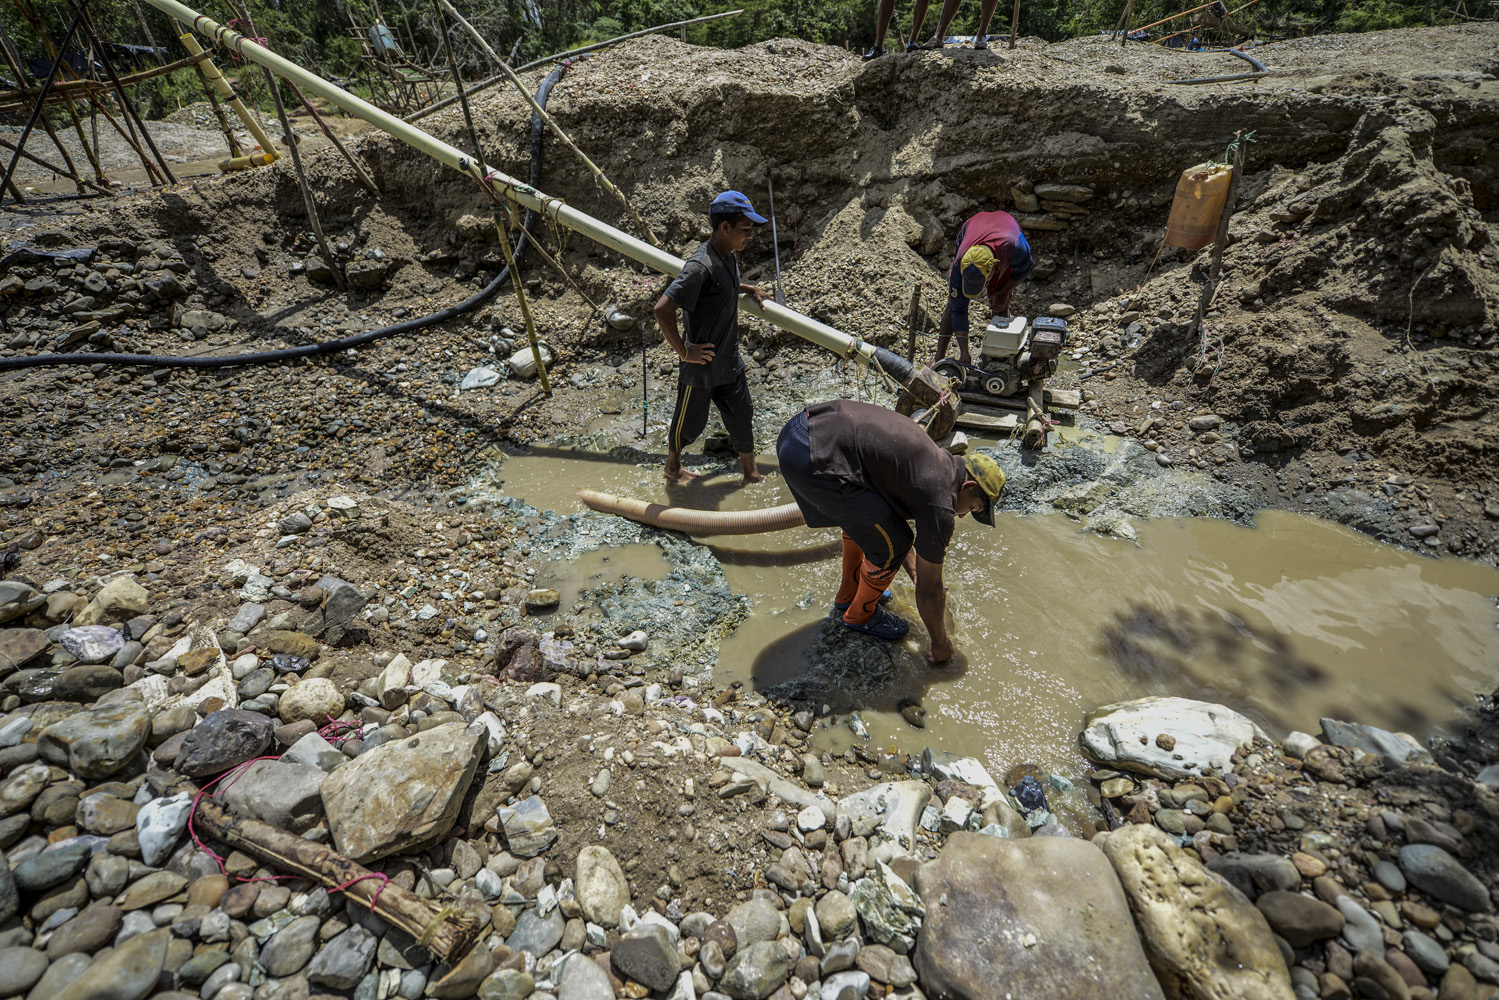 Amputaciones, contaminación y violencia dominan las minas de oro ilegales en Venezuela